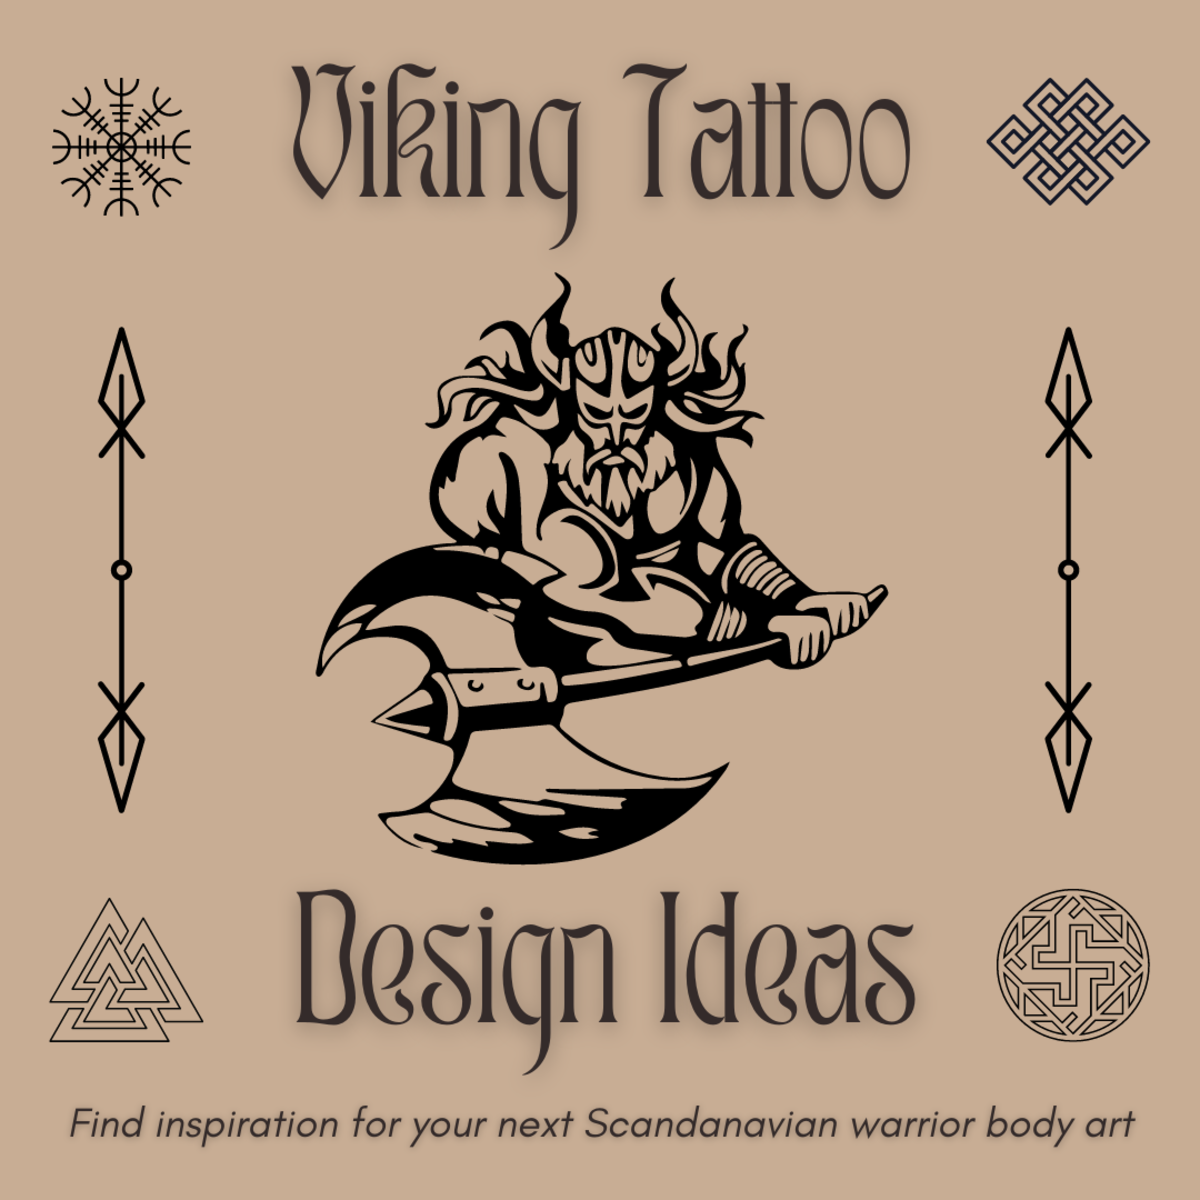 Viking Tattoo Design Nordic Mythology' Bandana | Spreadshirt